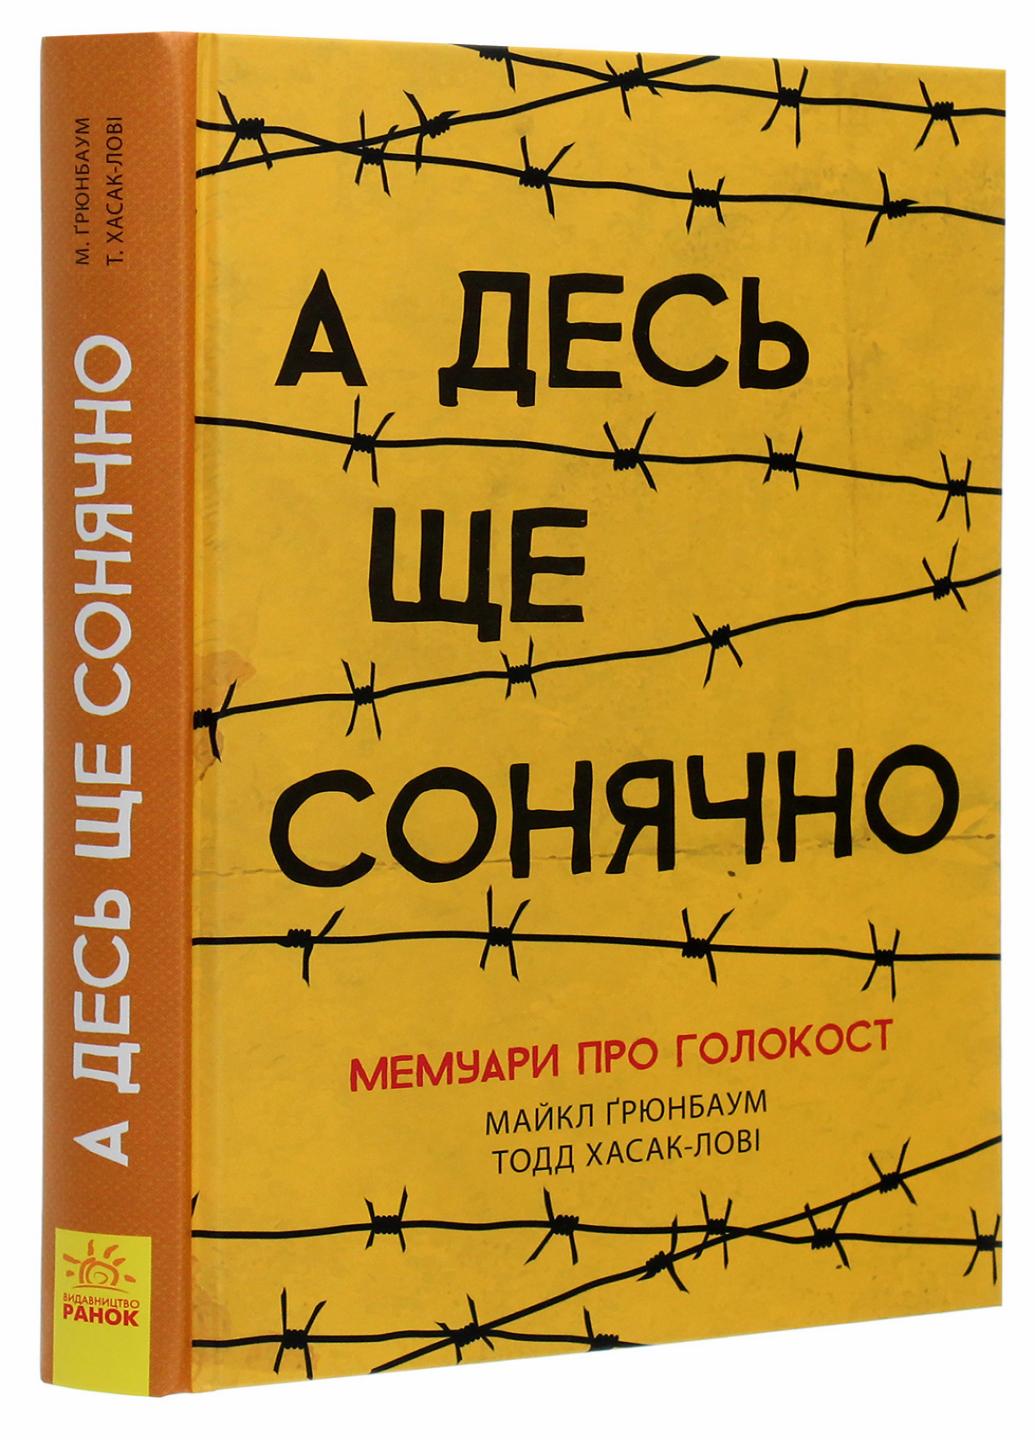 Книга "А десь ще сонячно мемуари про Голокост" Майкл Ґрюнбаум